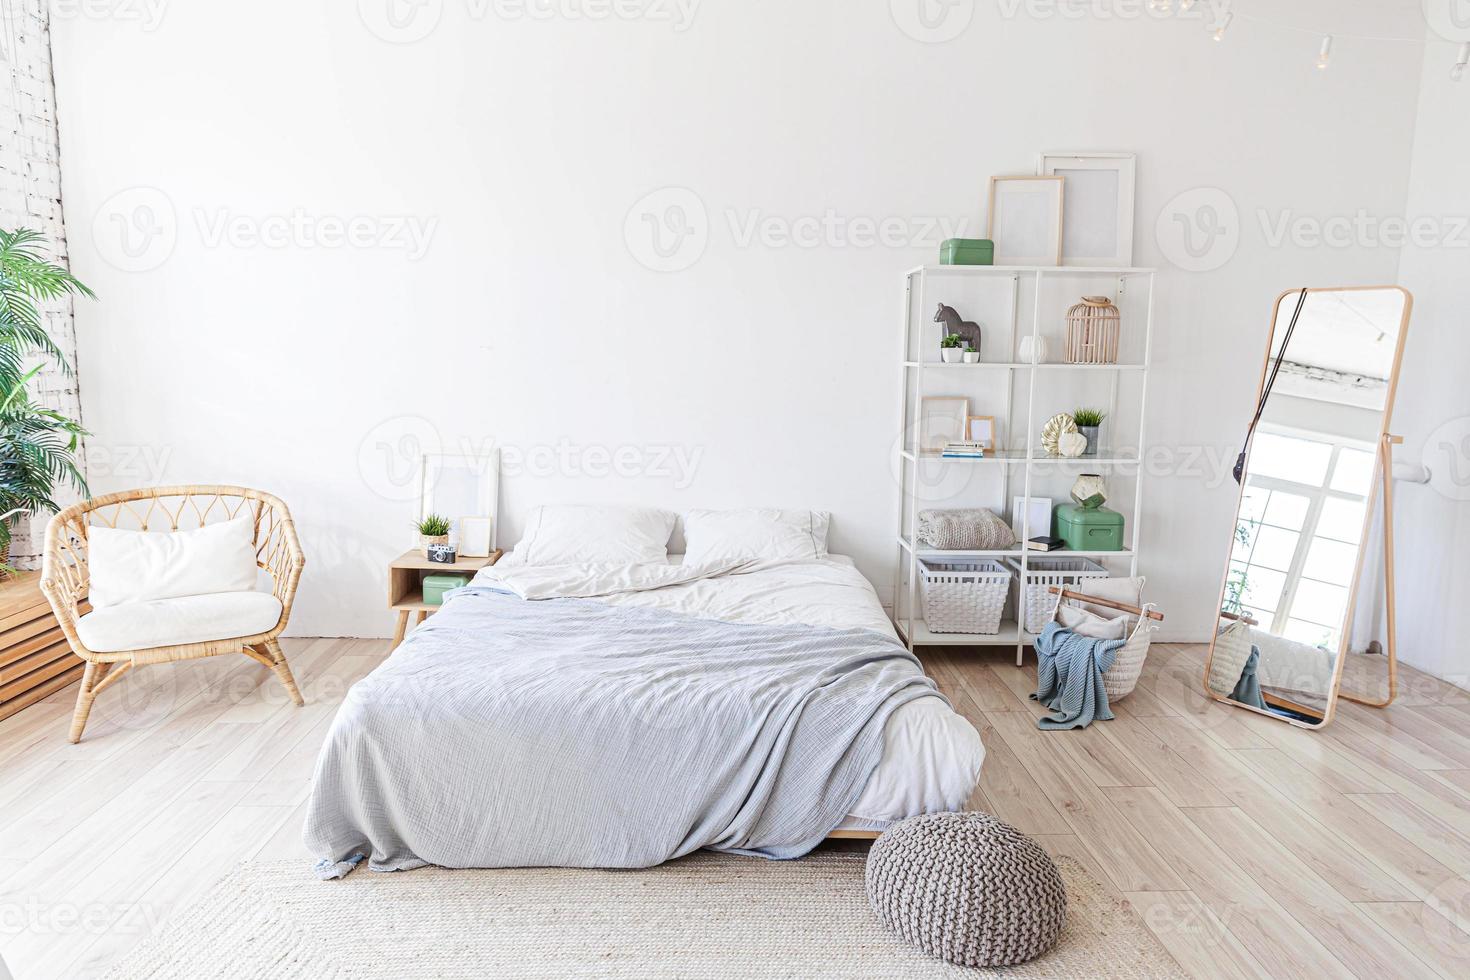 elegante interior de dormitorio tipo loft. amplio apartamento de diseño con paredes claras grandes ventanales cama grande. decoración limpia y moderna con muebles elegantes de estilo escandinavo minimalista. foto